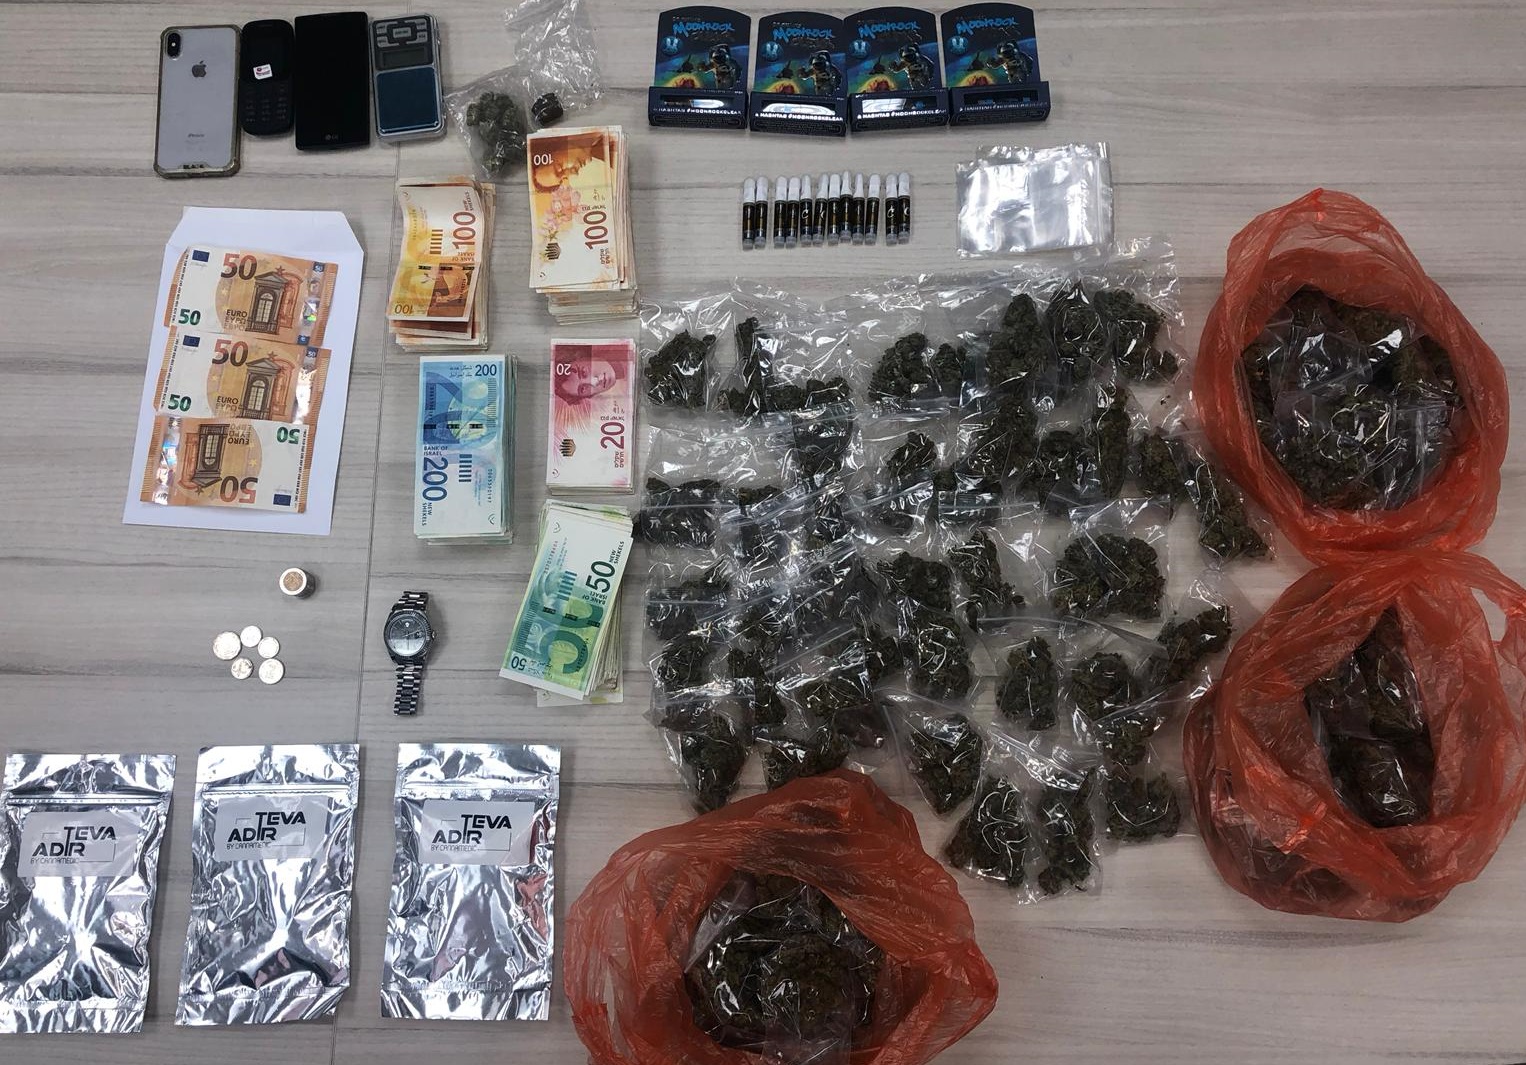 שני חשודים שונים בסחר בסמים נעצרו אמש על ידי המשטרה